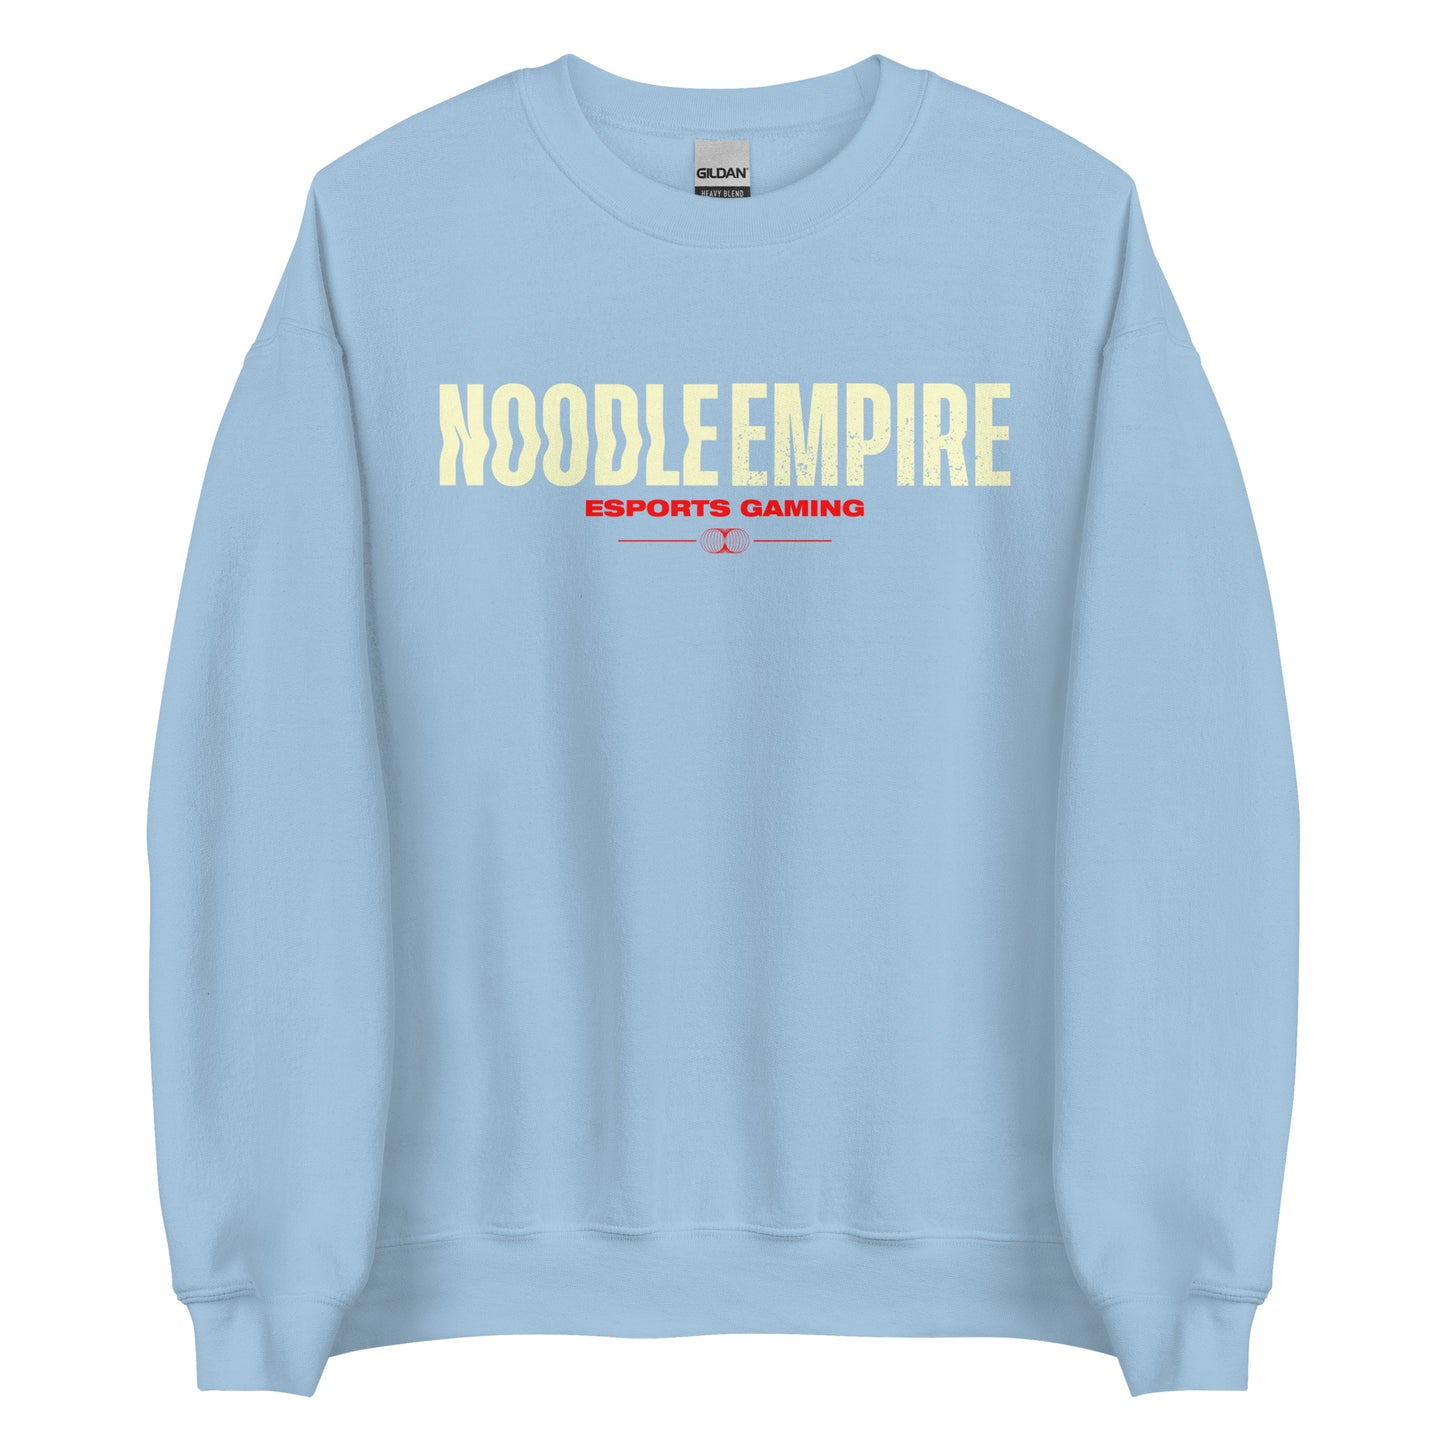 Noodle Empire Crewneck: Classic Look